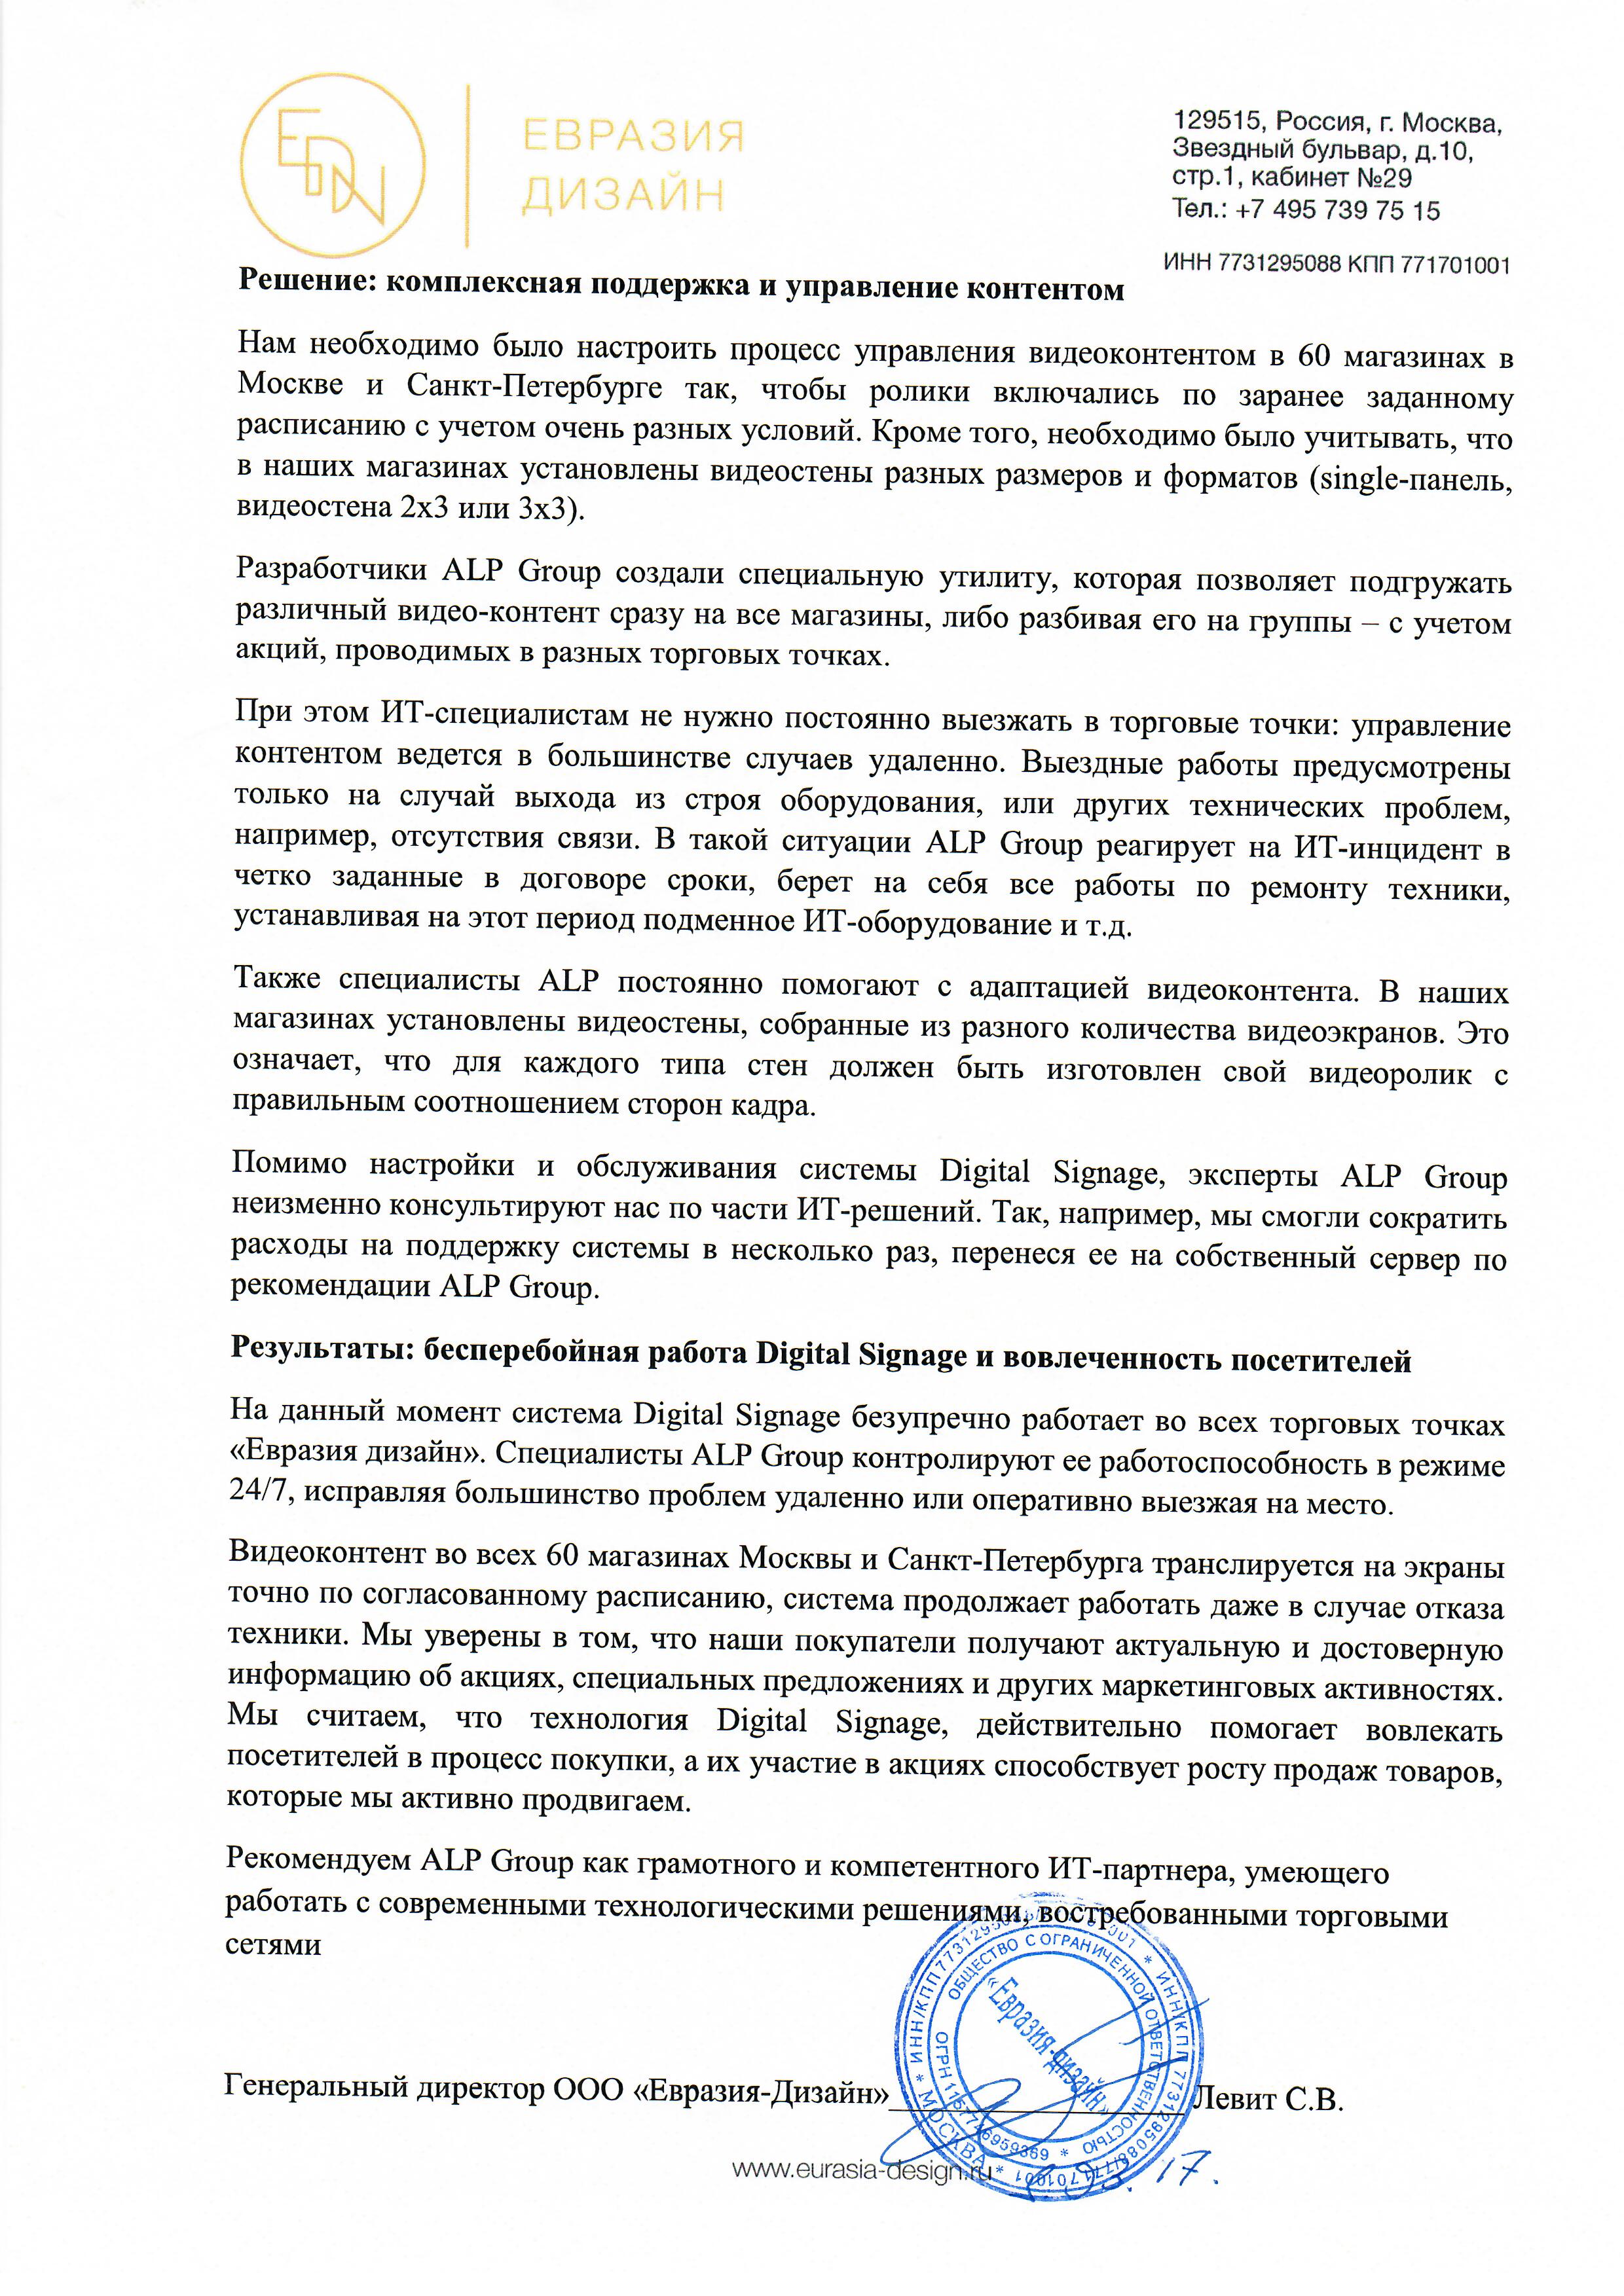 Работа с технологией Digital Signage в торговой сети «Евразия-дизайн» страница 2